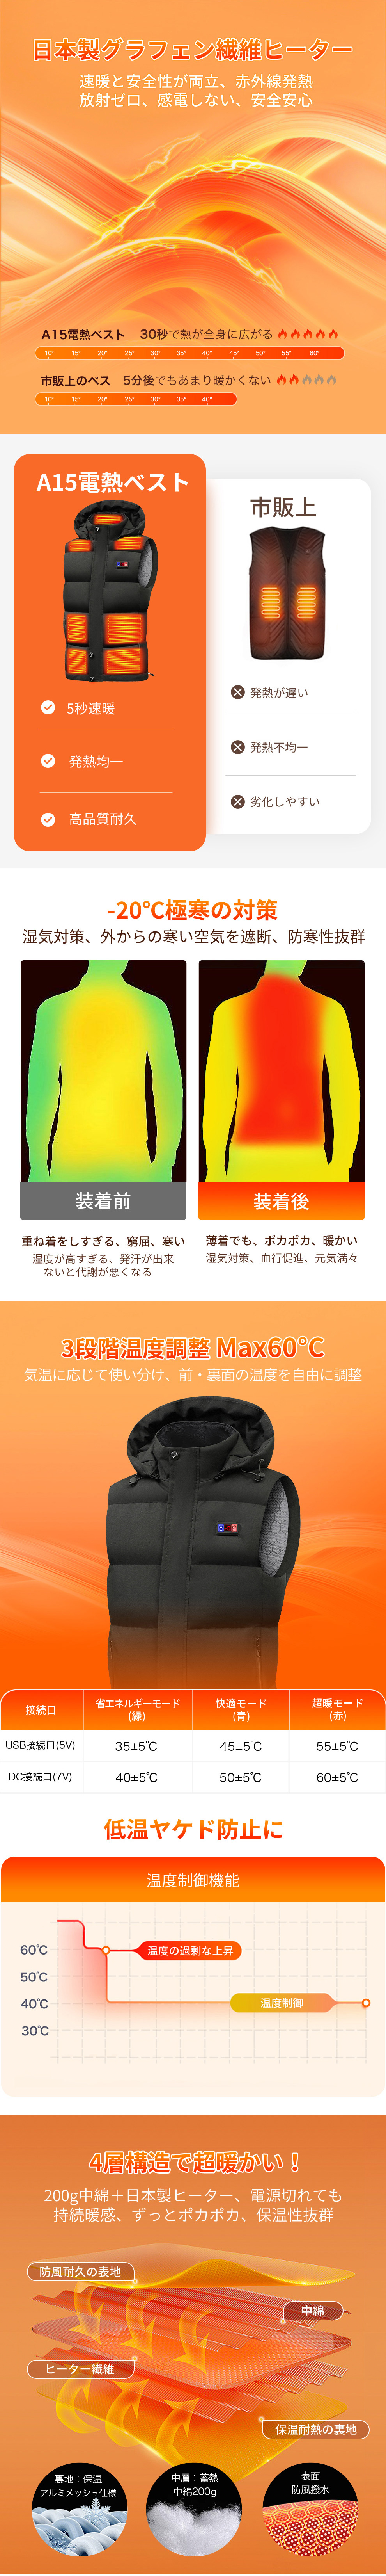 加熱パネル15枚 取外しフード 洗える LCD温度表示 日本製繊維ヒーター